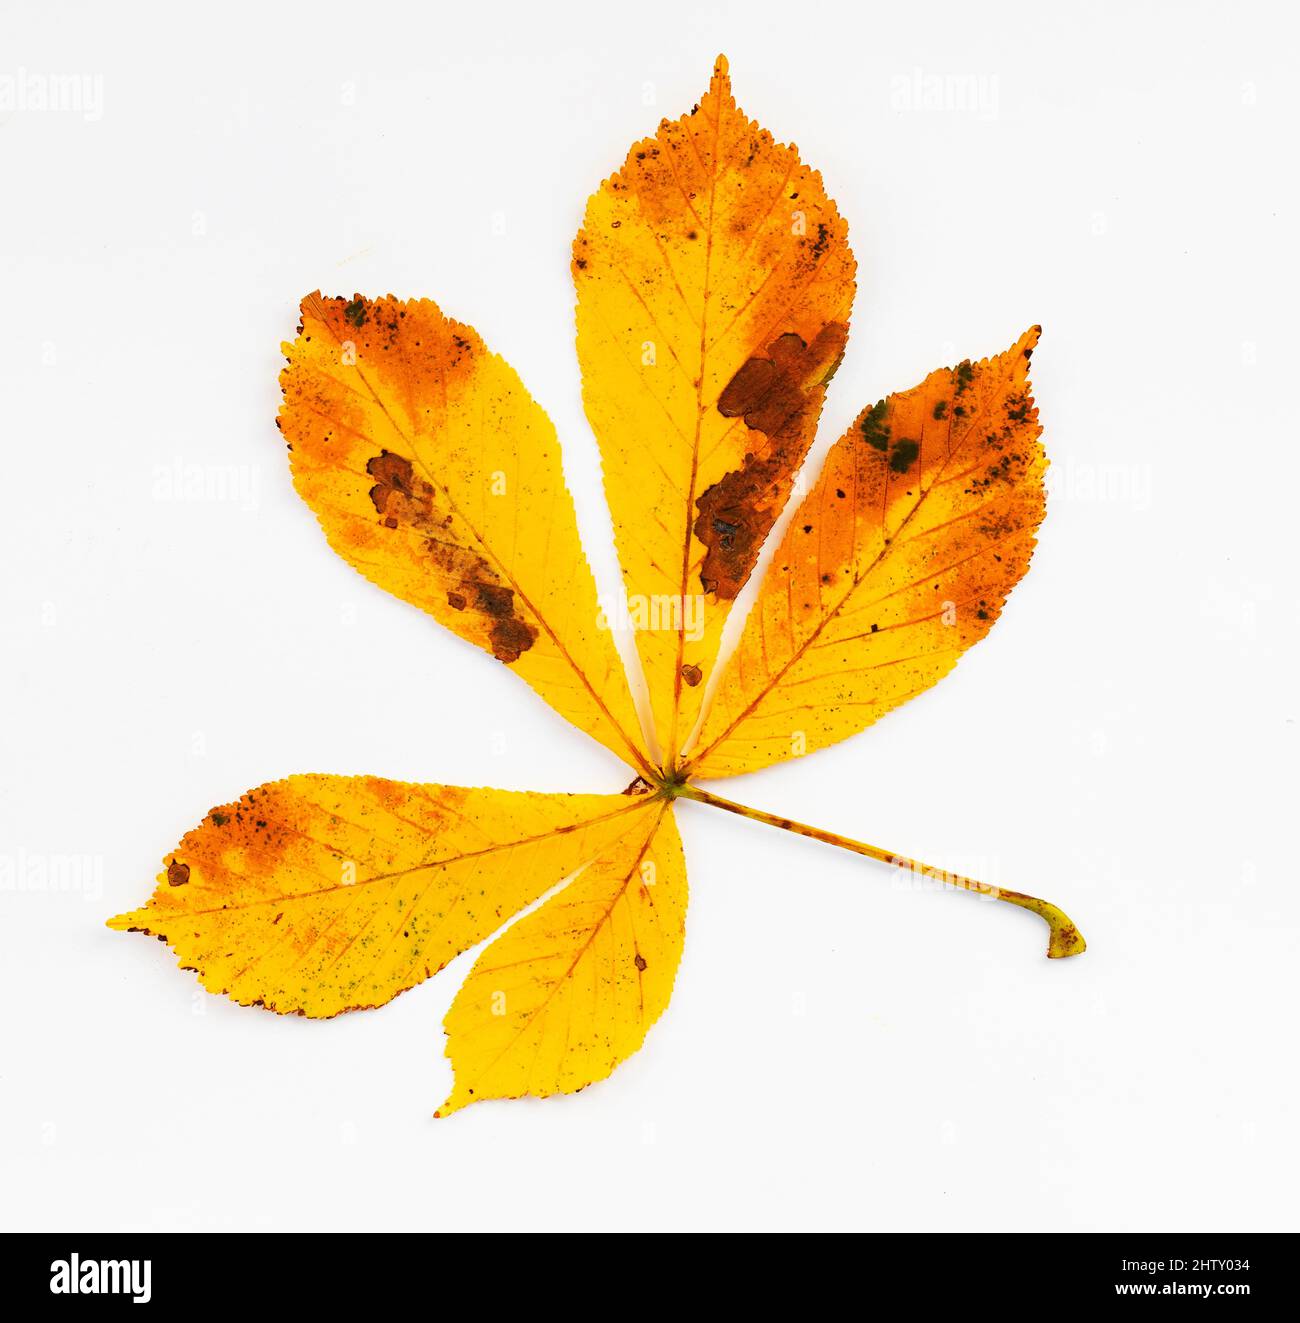 Autumn coloured chestnut leaf (Castanea), white background, studio shot Stock Photo